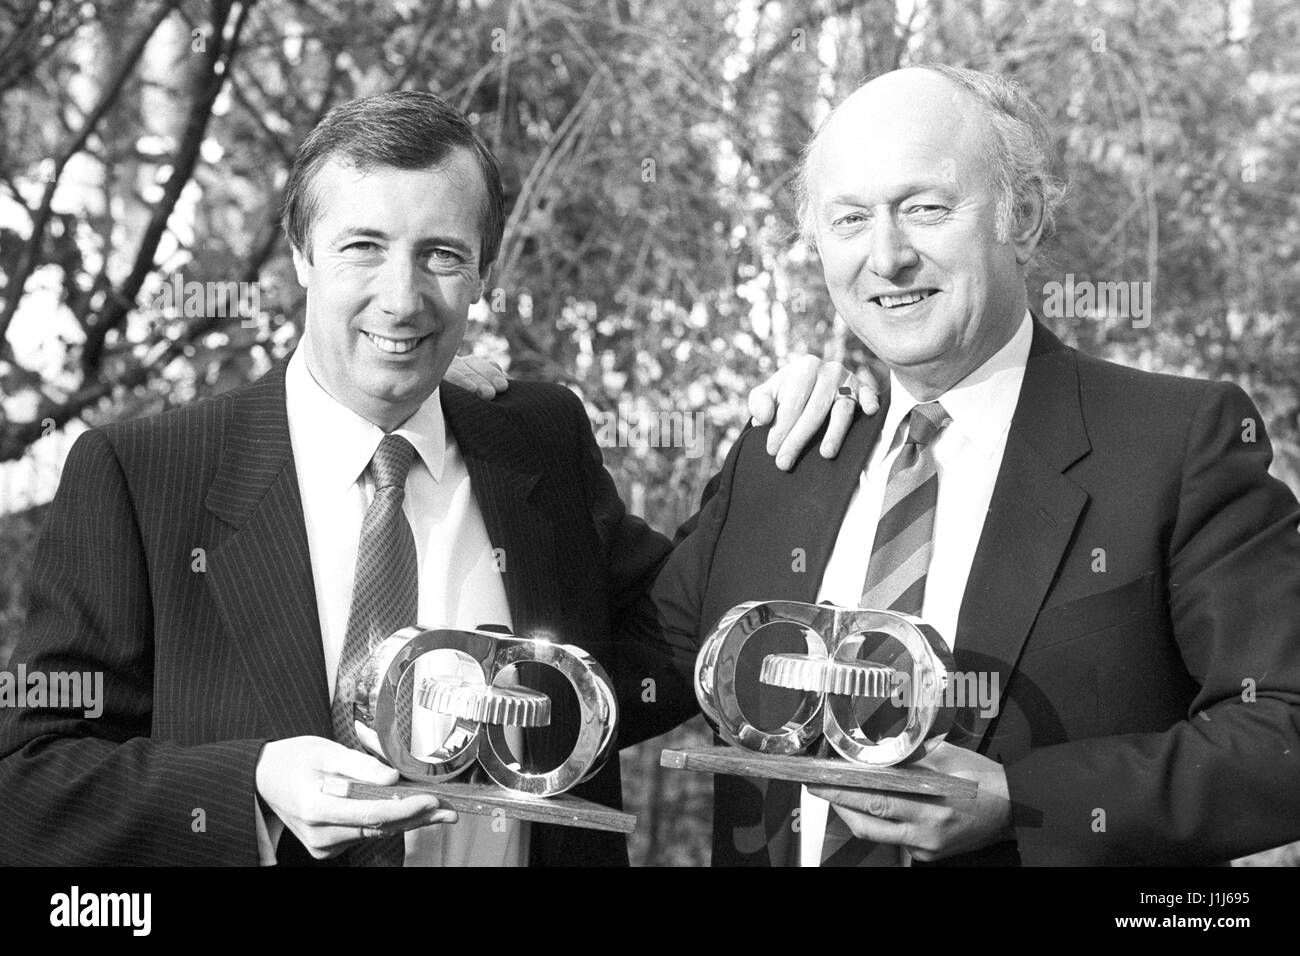 Philip Harris, 41 ans, président de Harris Queensway, (à gauche) et Peter Thompson, 55 ans, président du Consortium national de marchandises, après les deux hommes ont été nommés lauréats conjointe de l'homme d'affaires de l'année à l'Hôtel Savoy. Banque D'Images